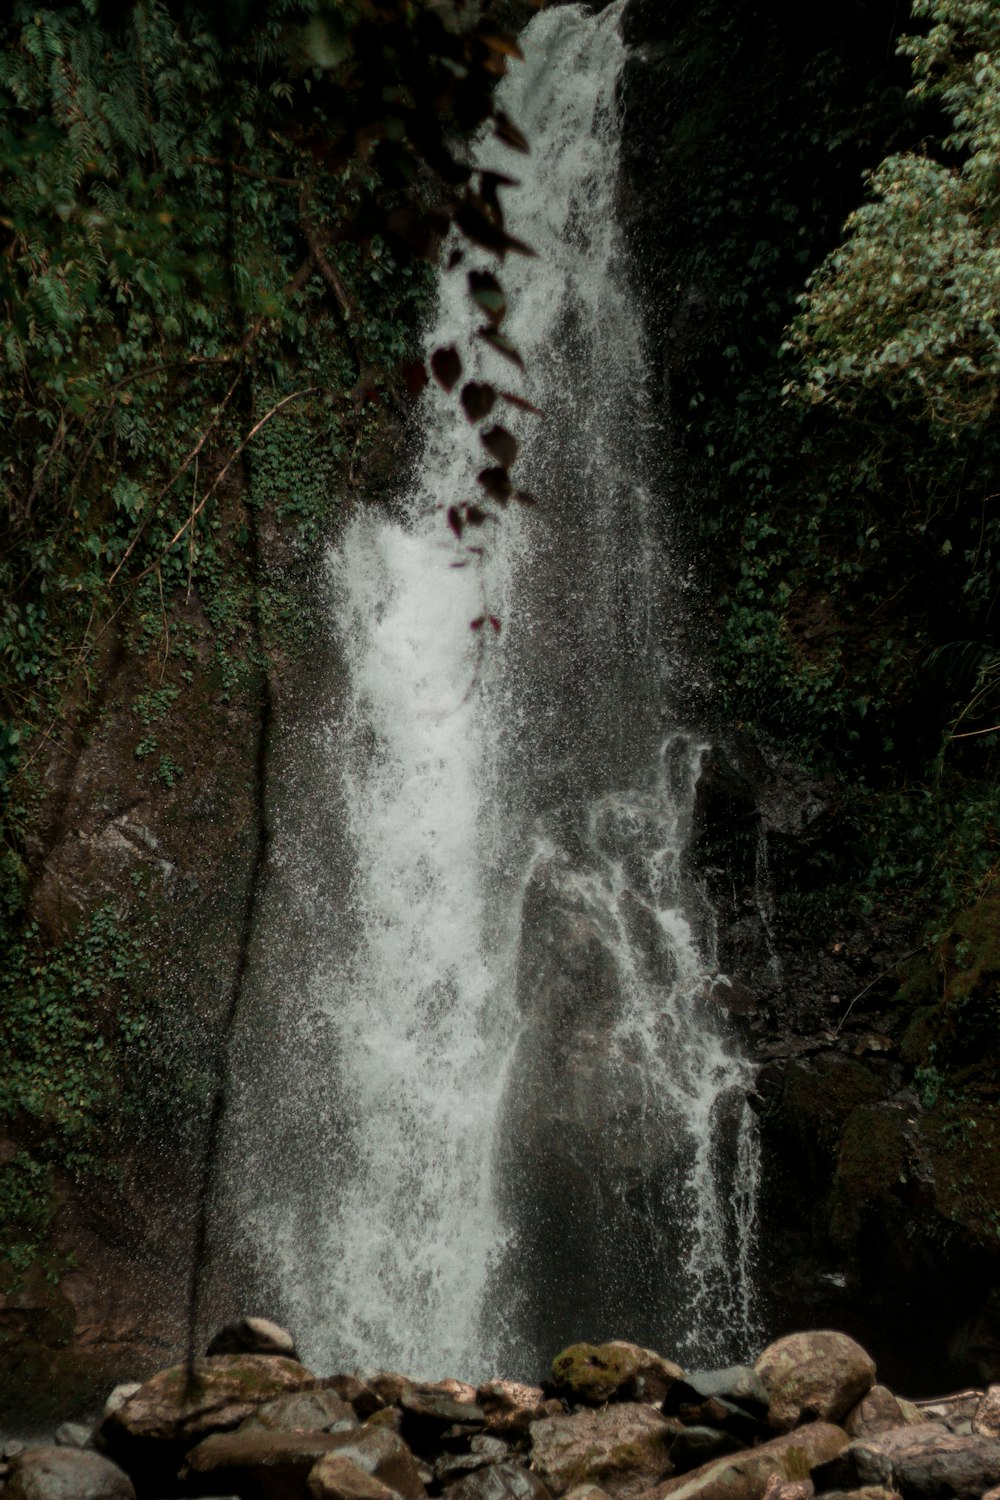 Ein Mann steht vor einem Wasserfall